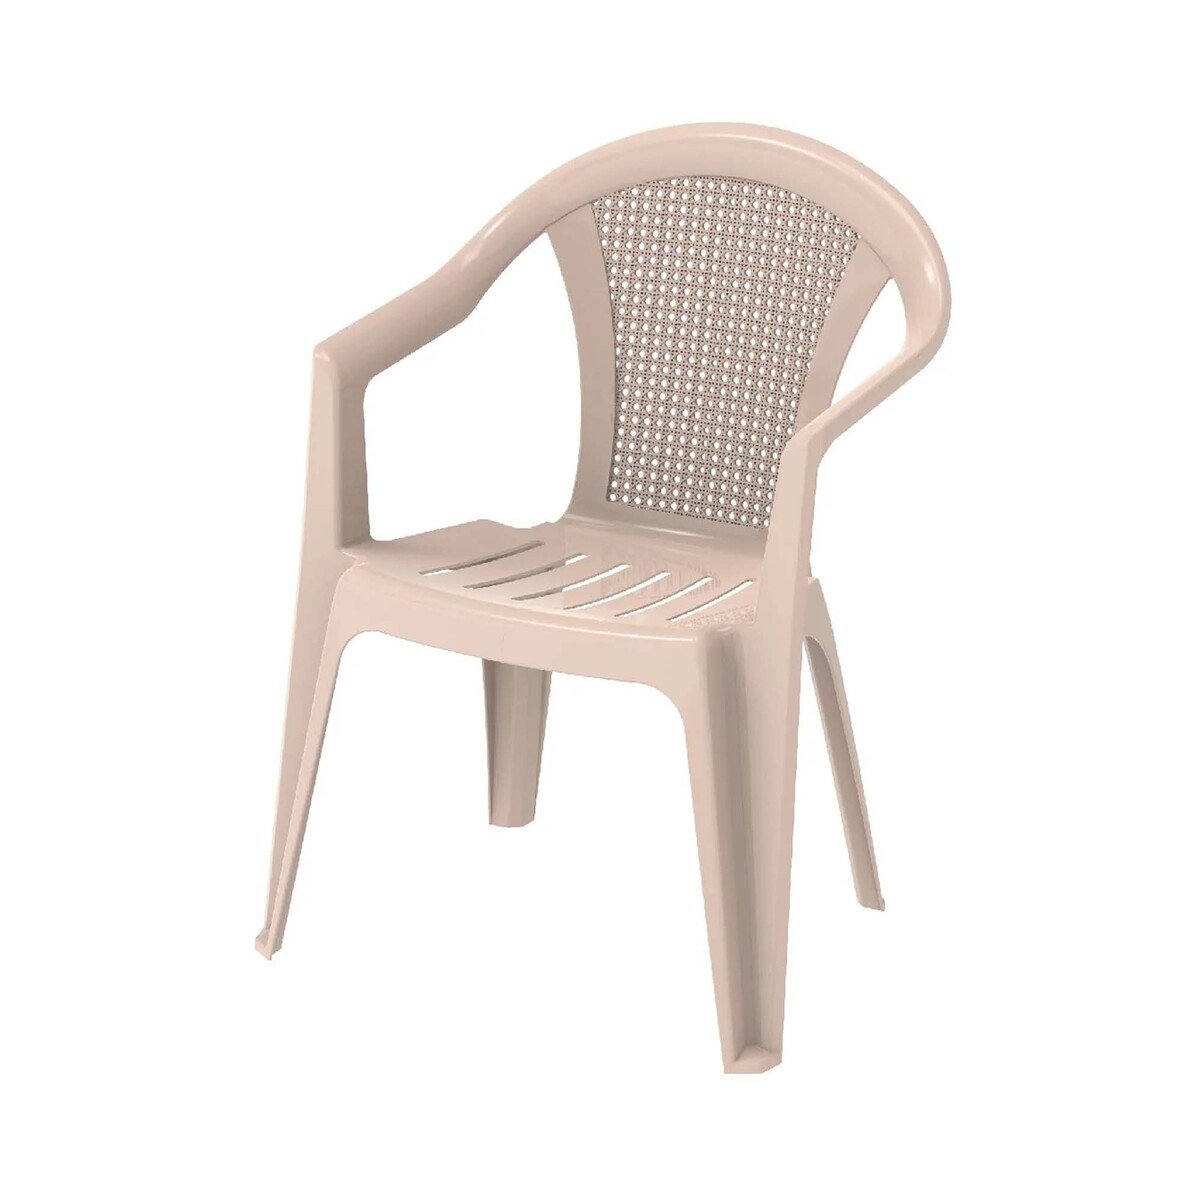 Cosmoplast Bamboo Outdoor Garden Chair IFOFAC009 Assorted Color